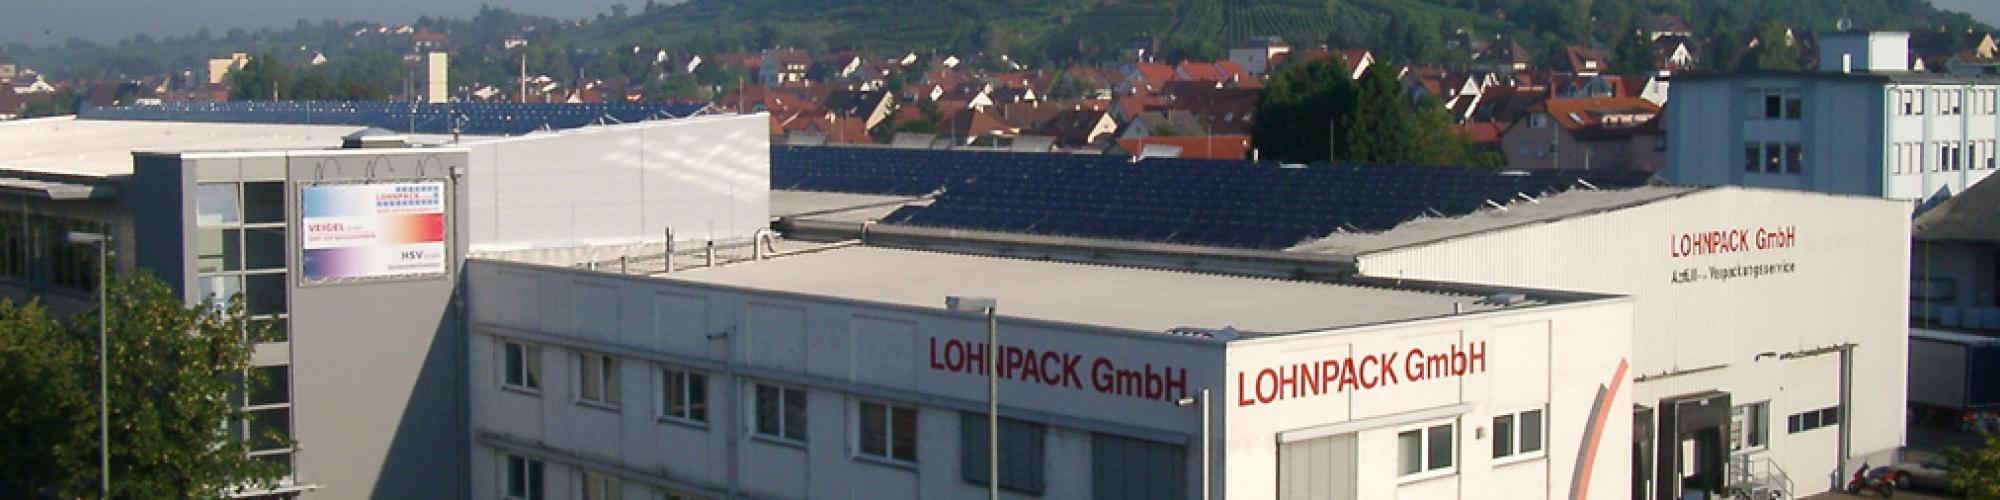 Lohnpack GmbH